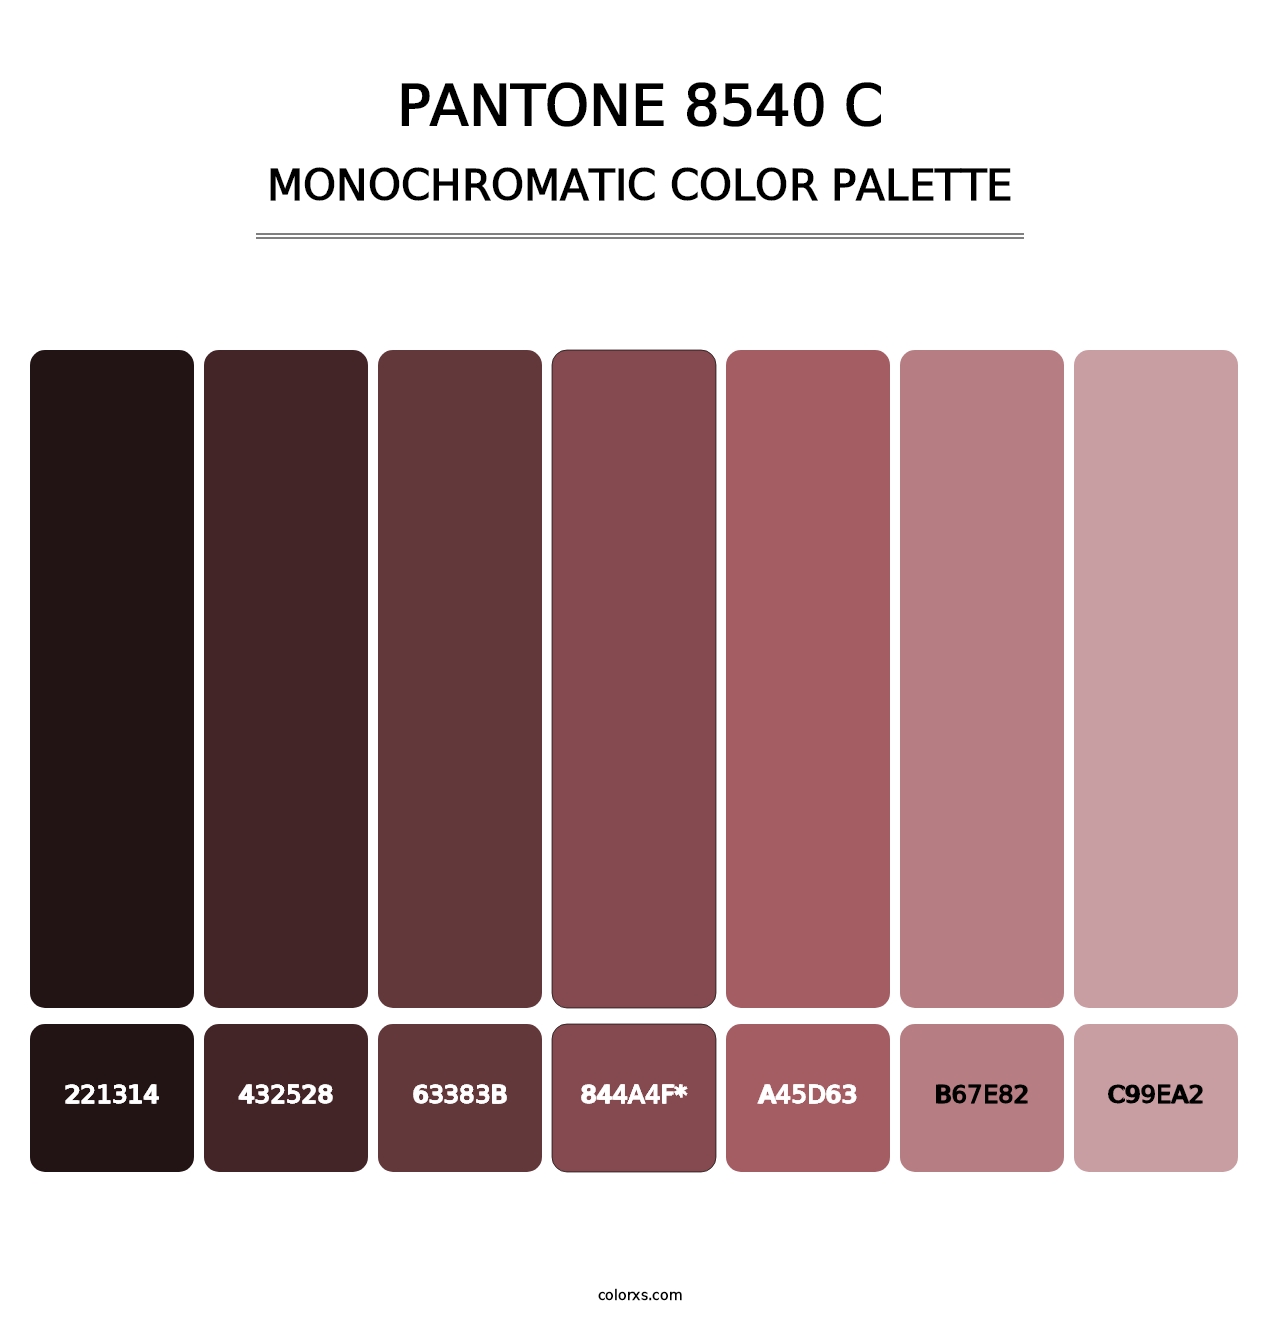 PANTONE 8540 C - Monochromatic Color Palette